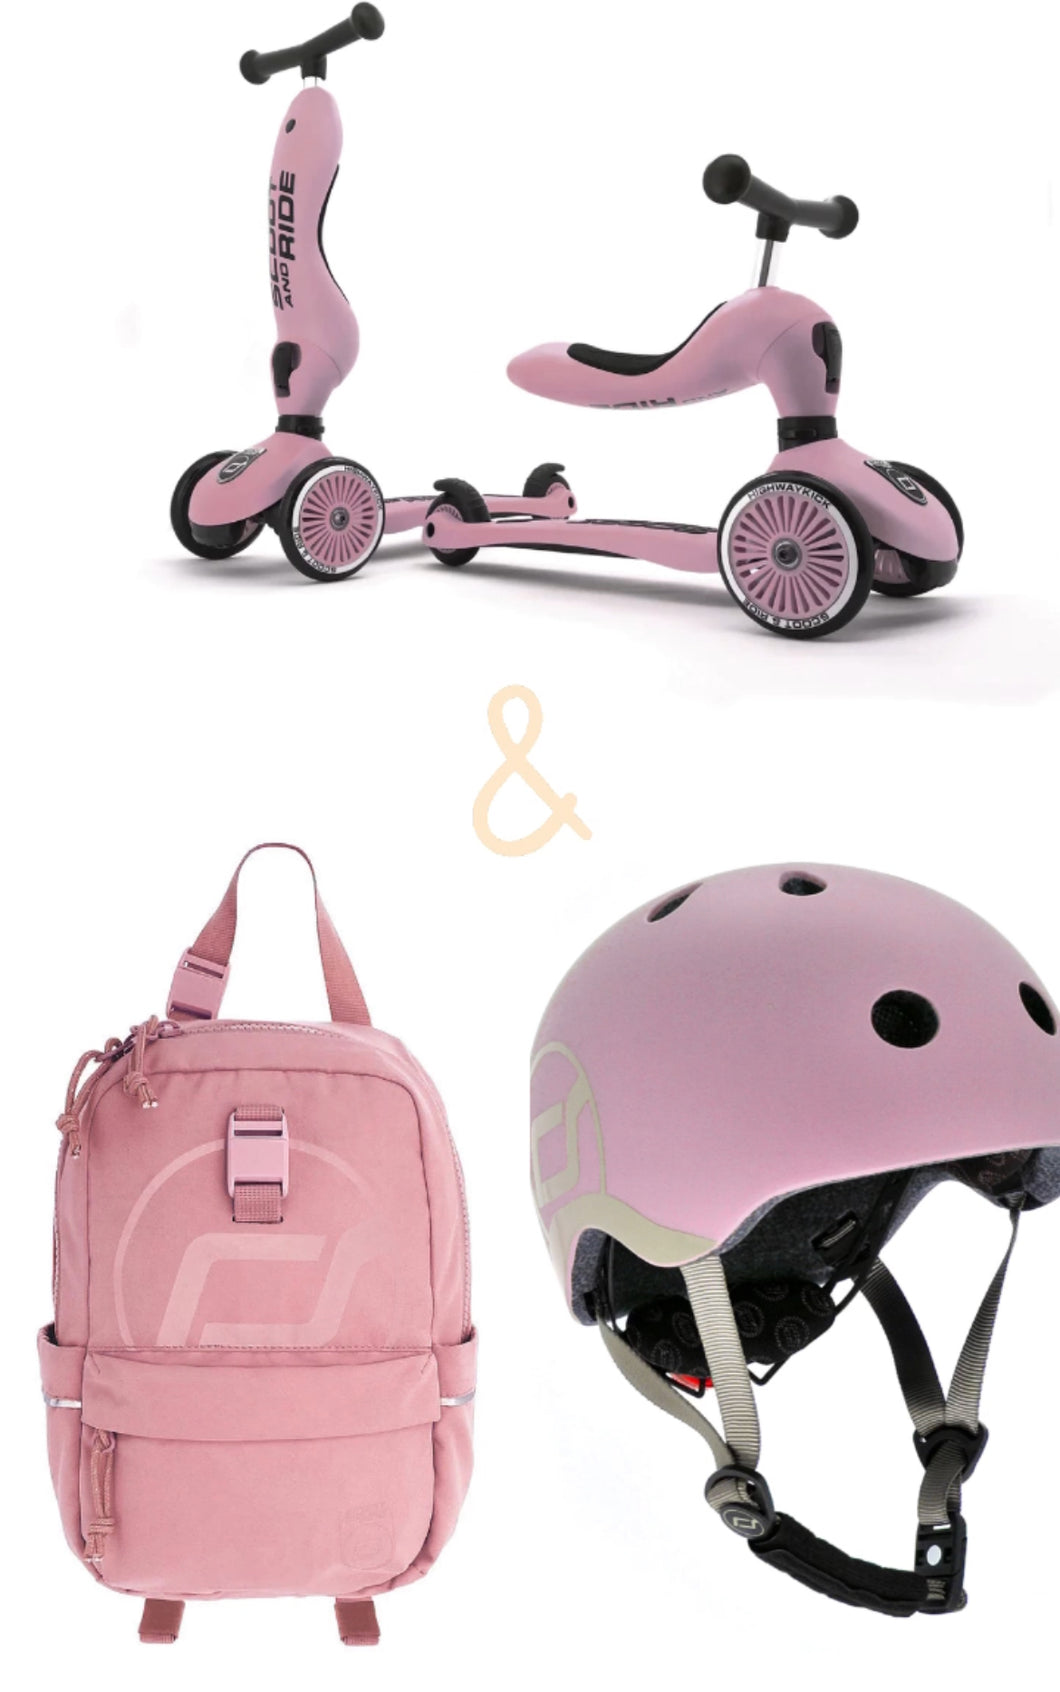 Bundle - Highwaykick 1 + helmet + bag by scoot & ride